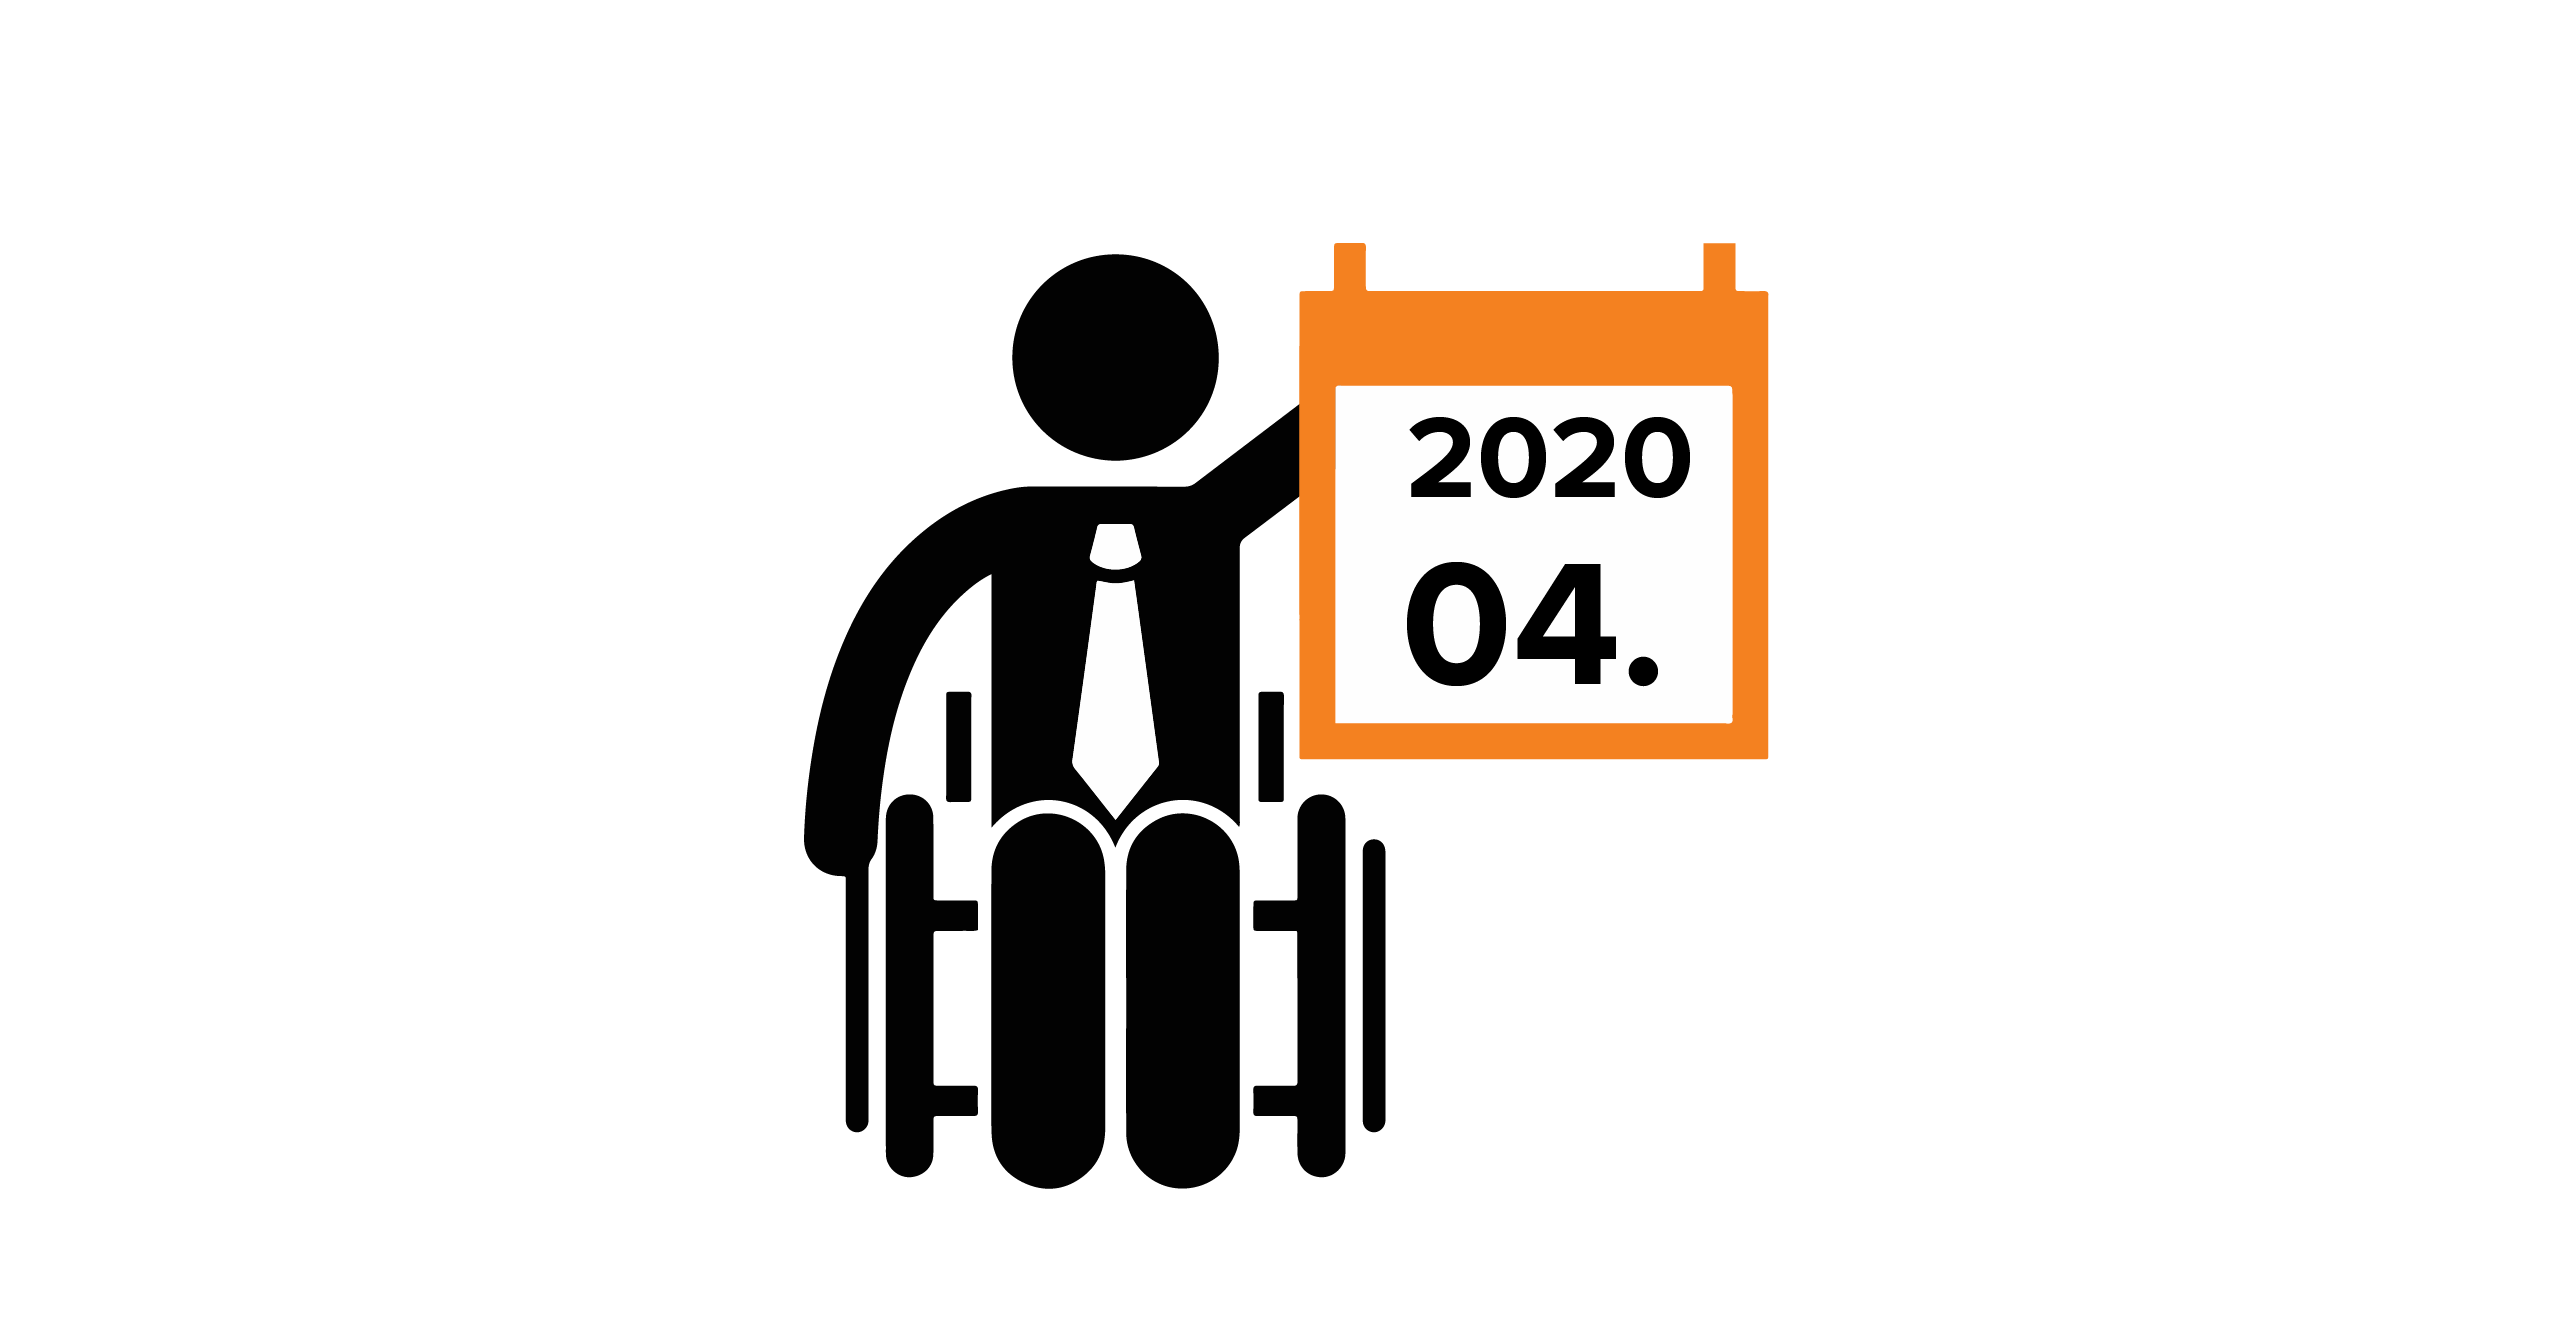 Na grafice człowiek na wózku, trzymający kalendarz z datą 04.2020